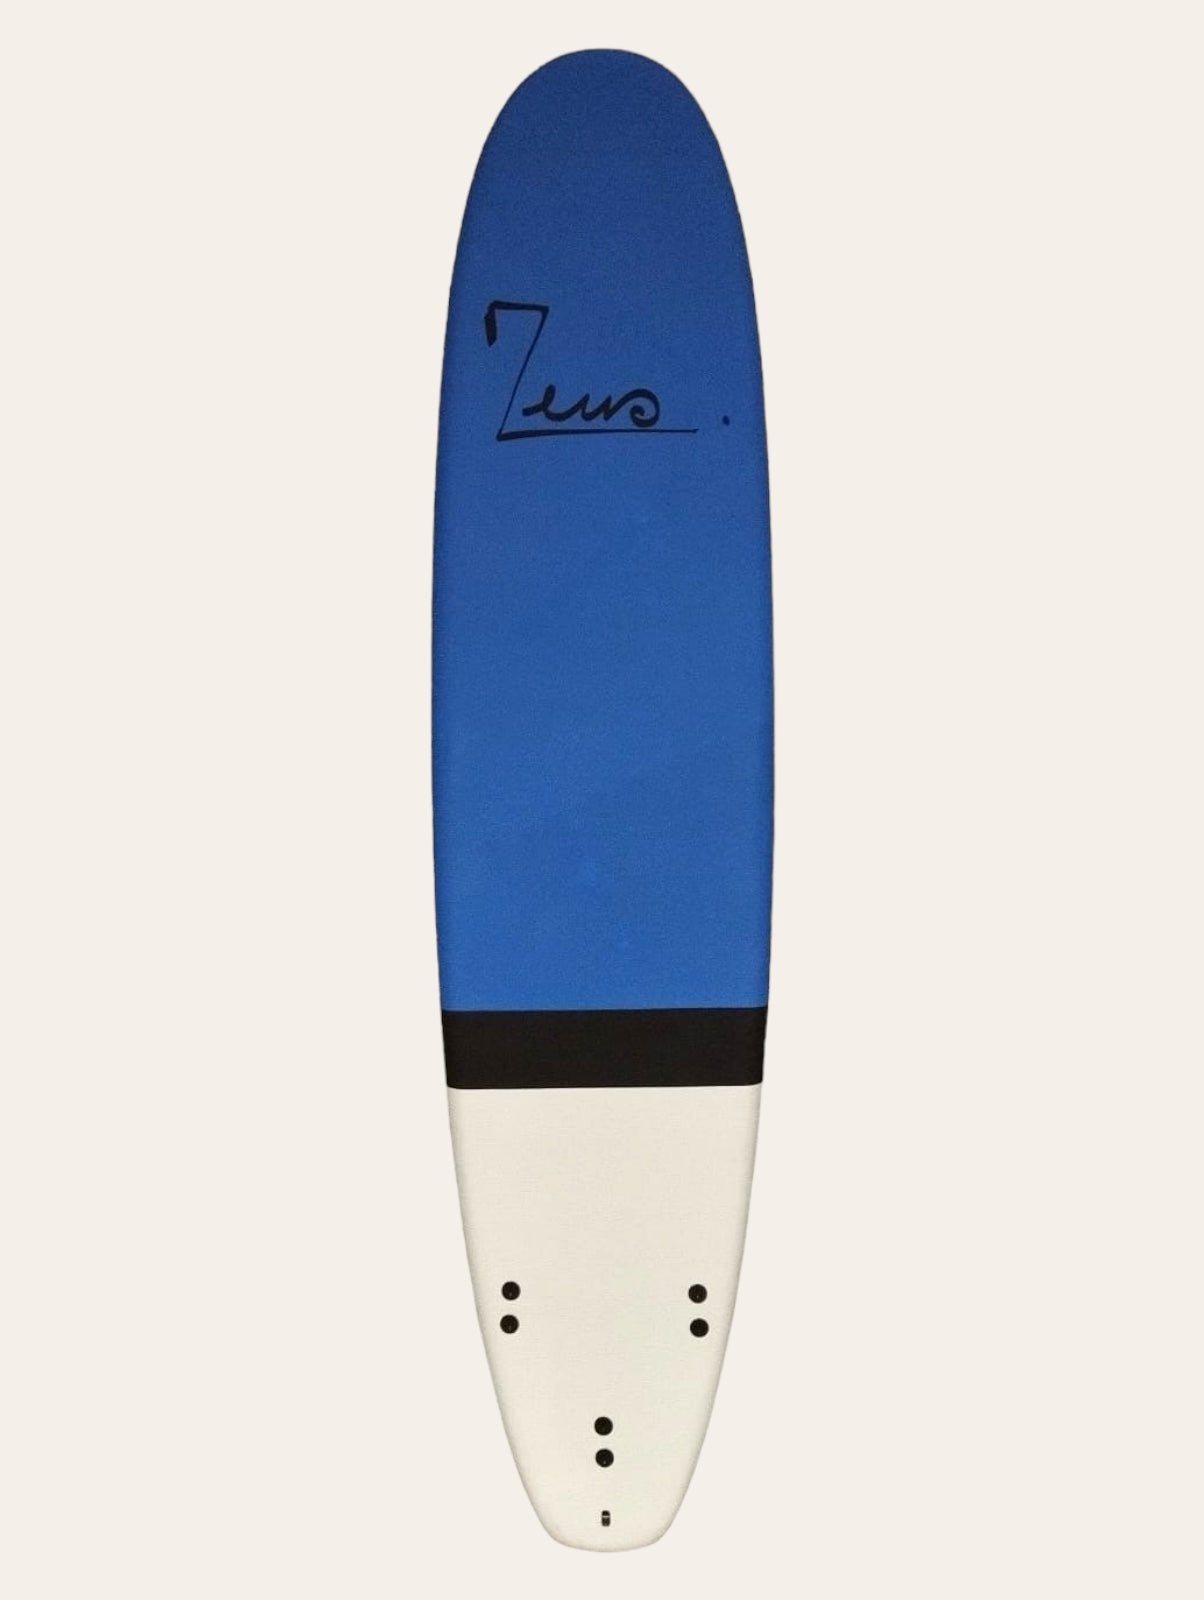 Planche de Surf Occasion Zeus Temper 8'0 EVAproduct_type#surf_#surfshop#_zeus-surfboards_